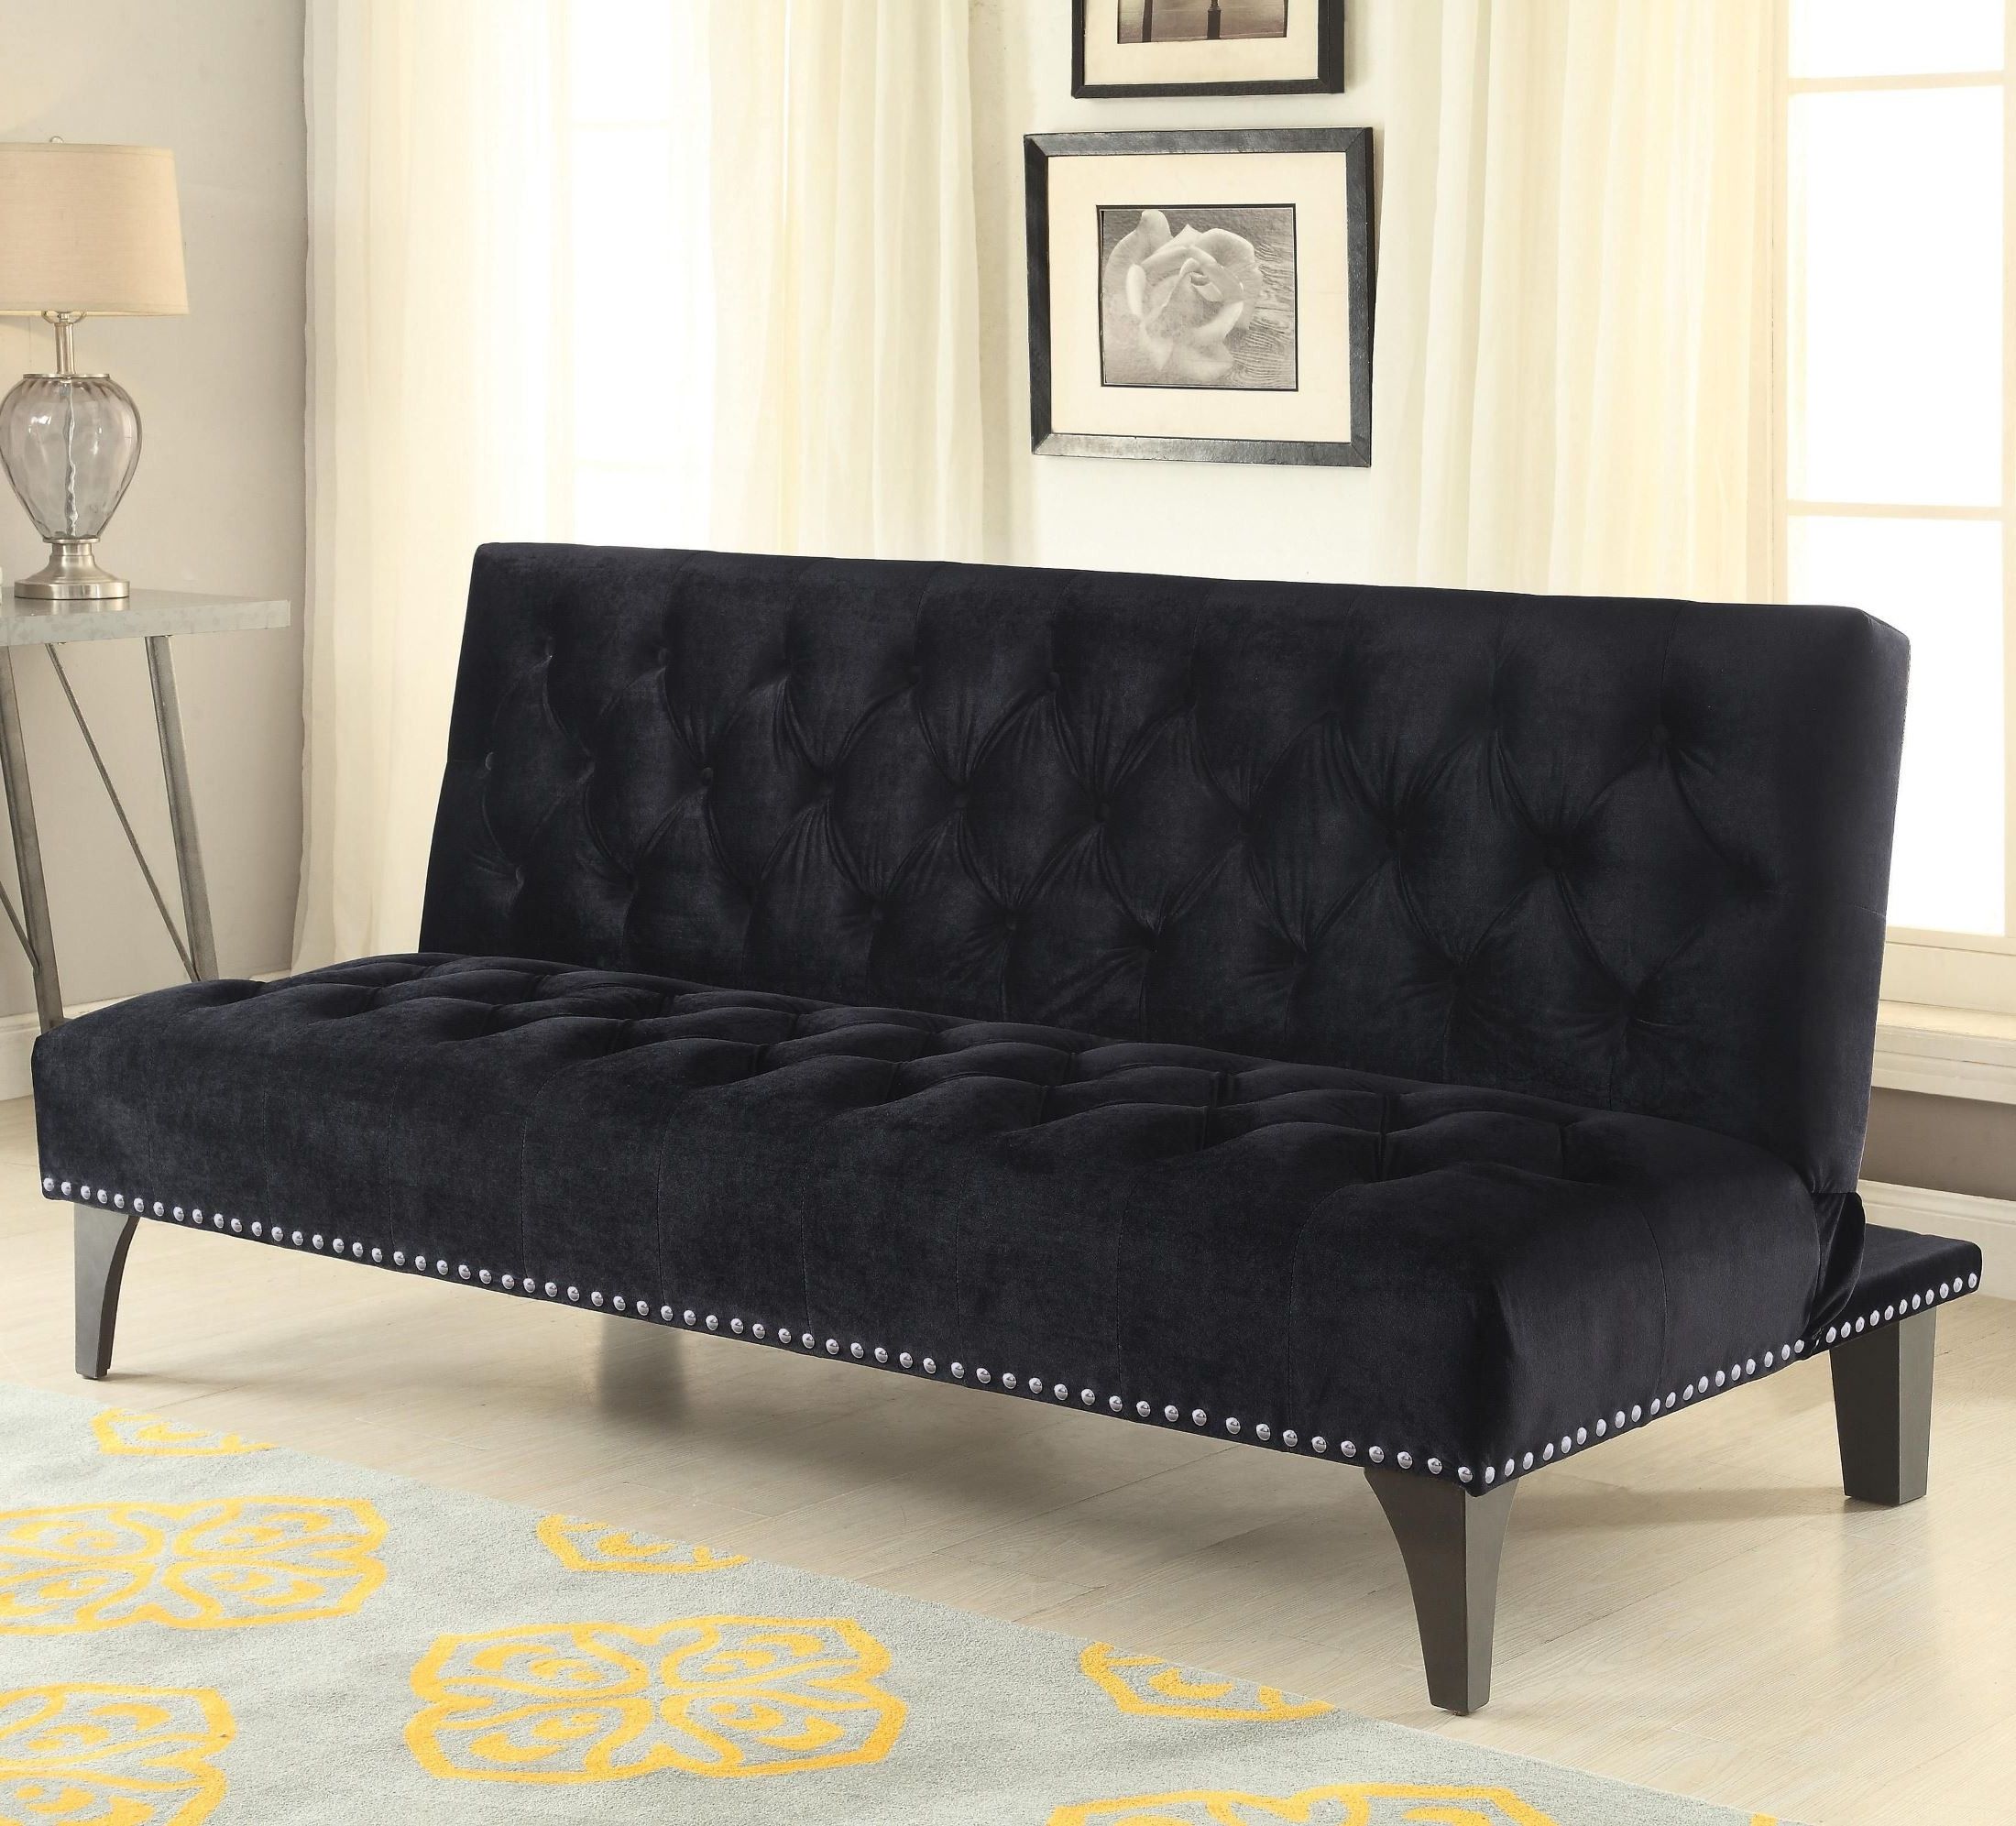 500237 Black Velvet Upholstery Sofa Bed From Coaster (500237) (Photo 7 of 15)